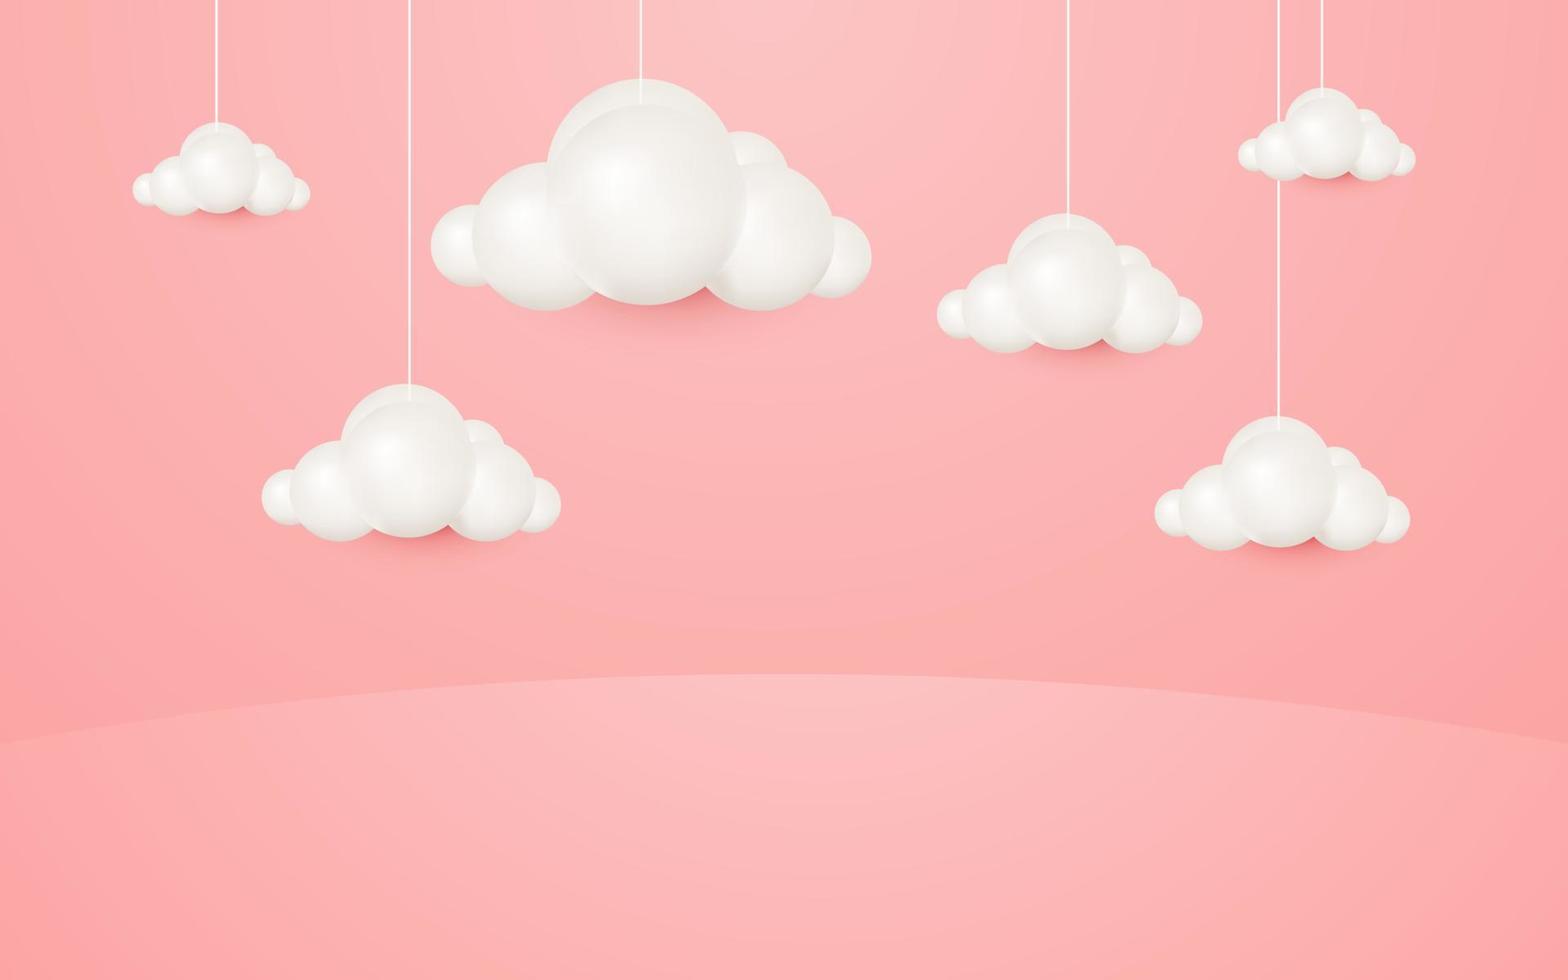 Thưởng thức một trải nghiệm đầy màu sắc với đám mây treo kiểu phim hoạt hình 3D trên nền hồng pastel. Hình ảnh này sẽ đưa bạn vào một thế giới thần tiên giữa đám mây trắng muôn vẻ.